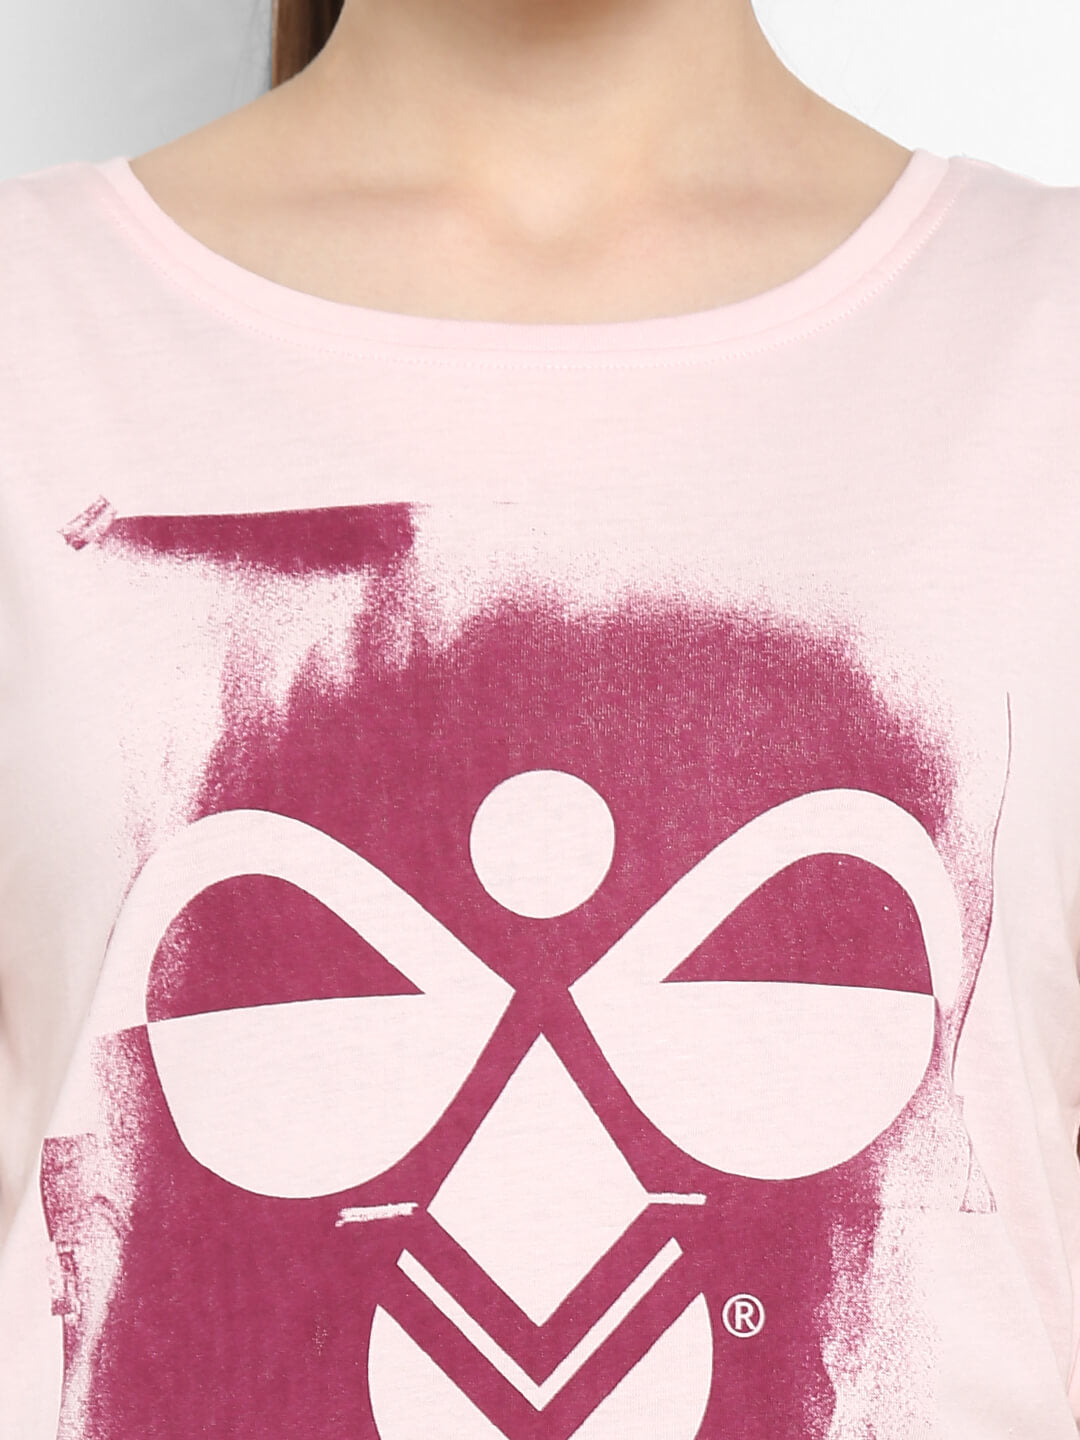 Hazel Lilac T-Shirt for Women